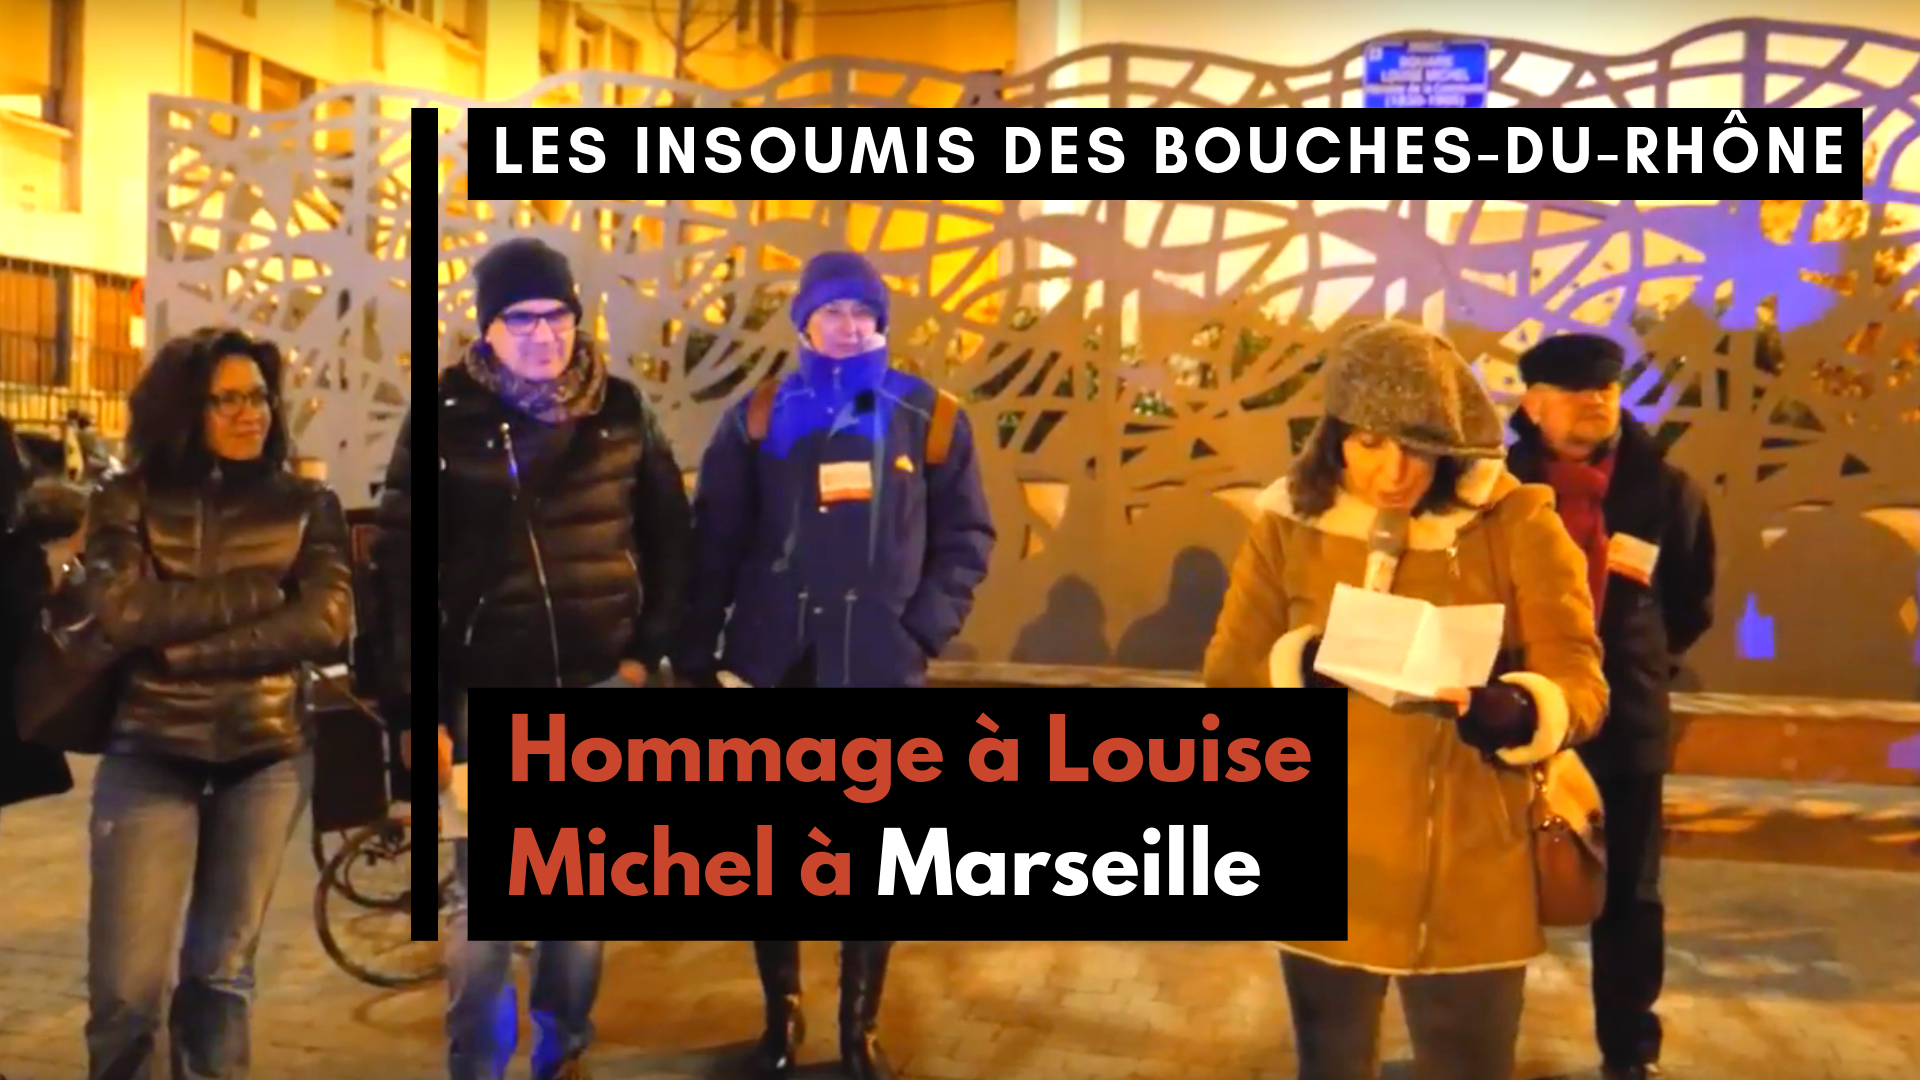 Hommage à Louise Michel à Marseille  L'insoumission